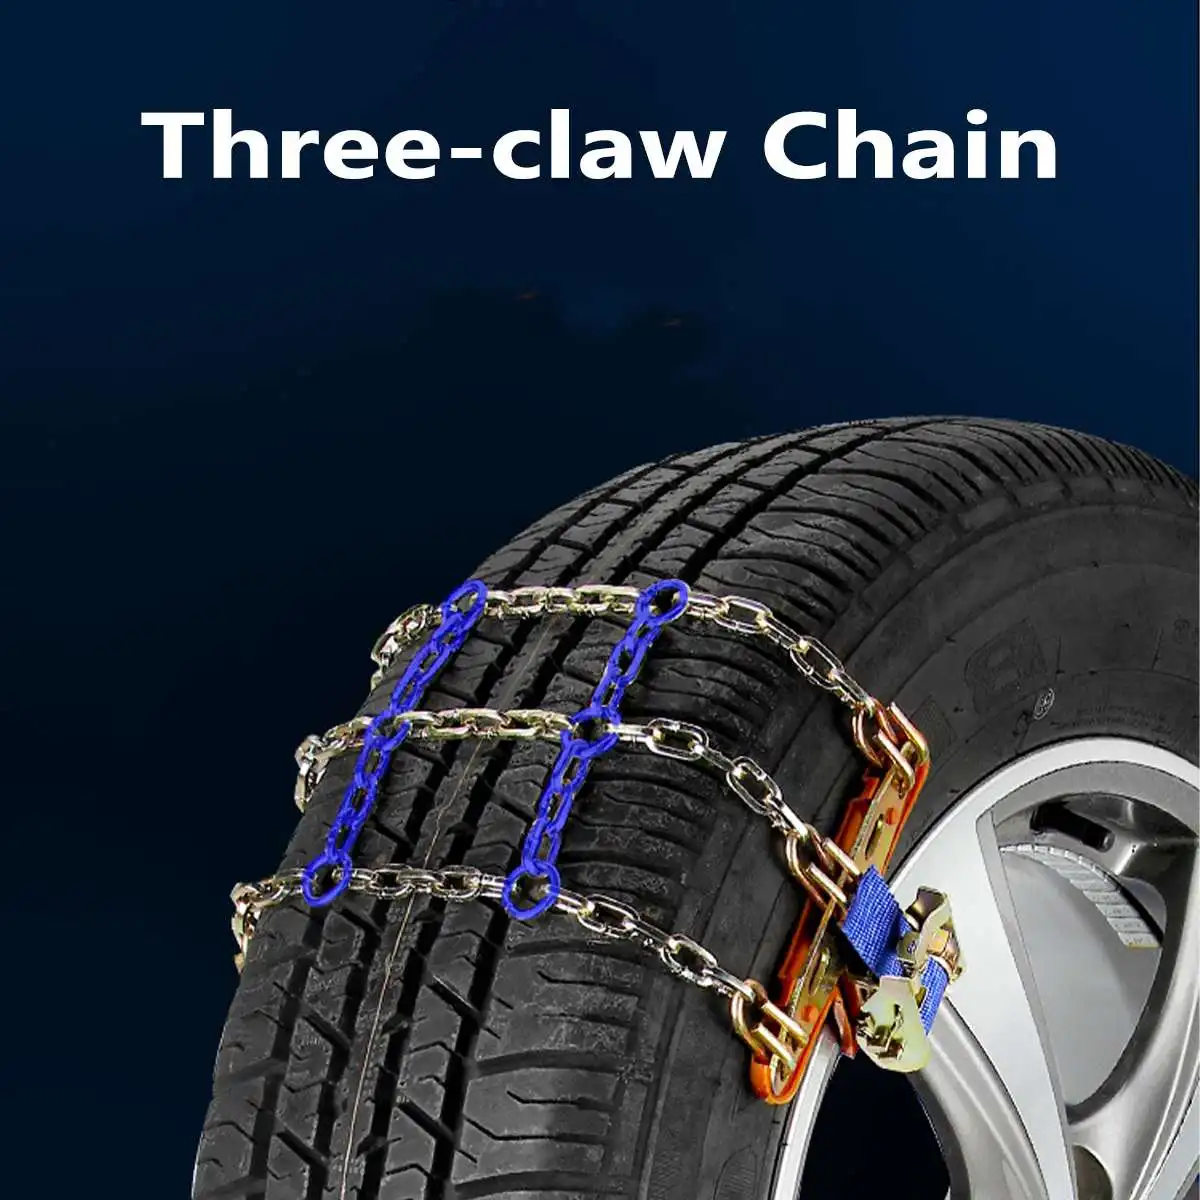 Профессиональные 3 цепи дизайн баланса противоскользящие цепи износостойкие стальные автомобильные цепи снега для льда/снега/грязи дорожный безопасный для вождения